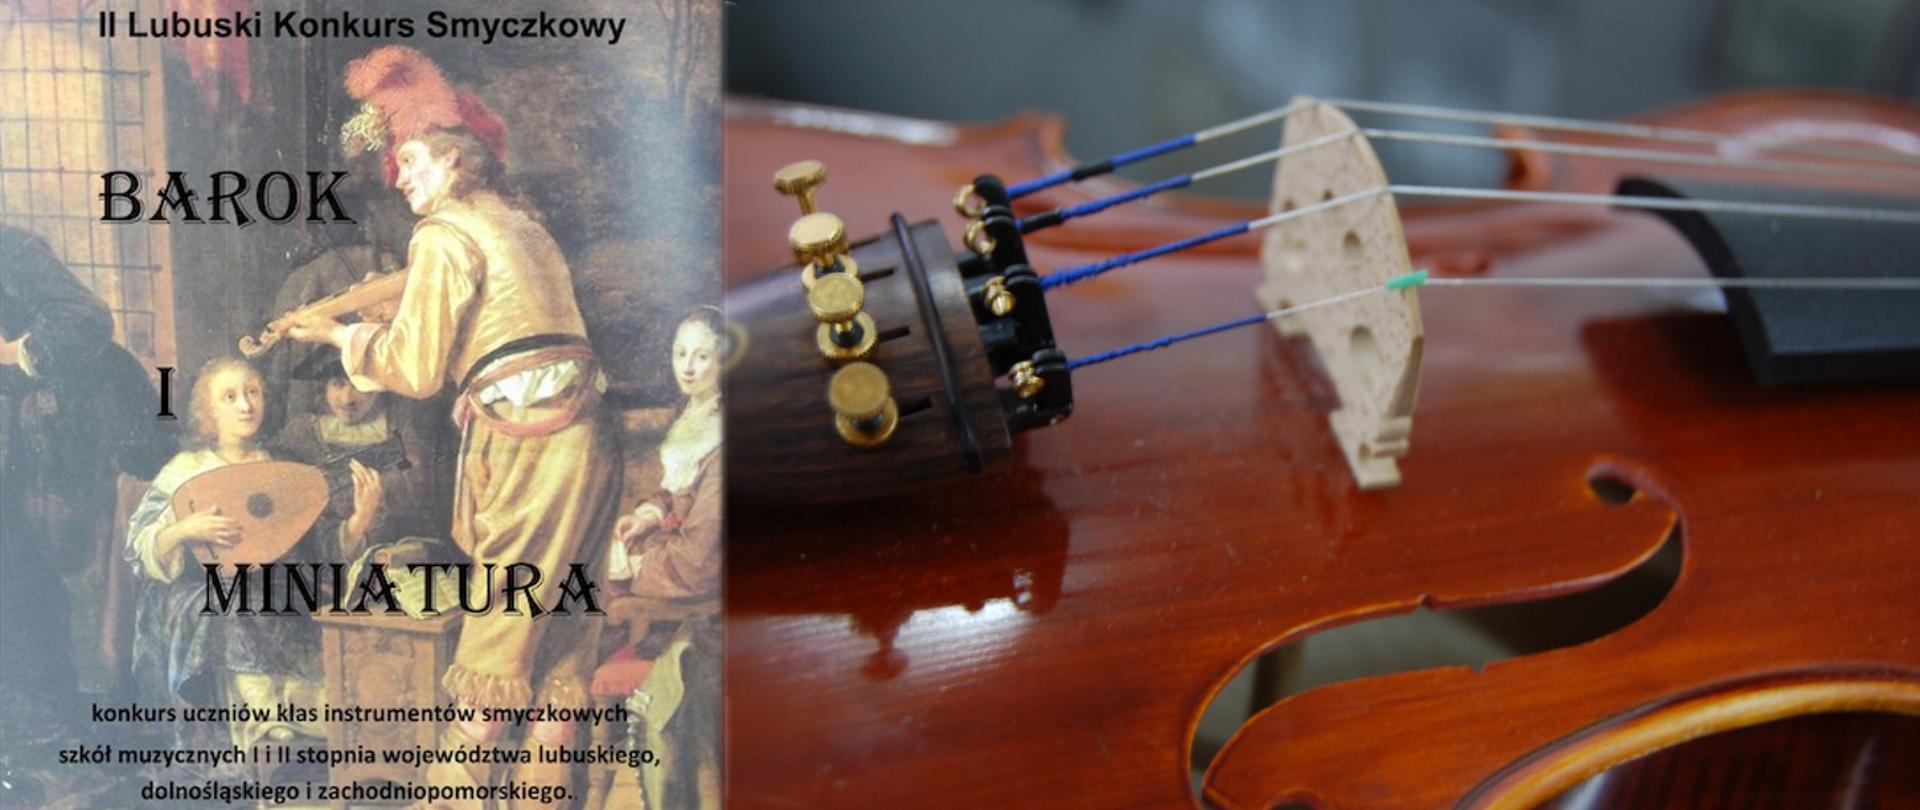 Zdjęcie przedstawia z lewej strony grafikę plakat z konkursu, ciemny obrazek orkiestry barokowej z napisem barok i miniatura, u góry napis II lubuski Konkurs Smyczkowy, z prawej strony fragment instrumentu skrzypce.